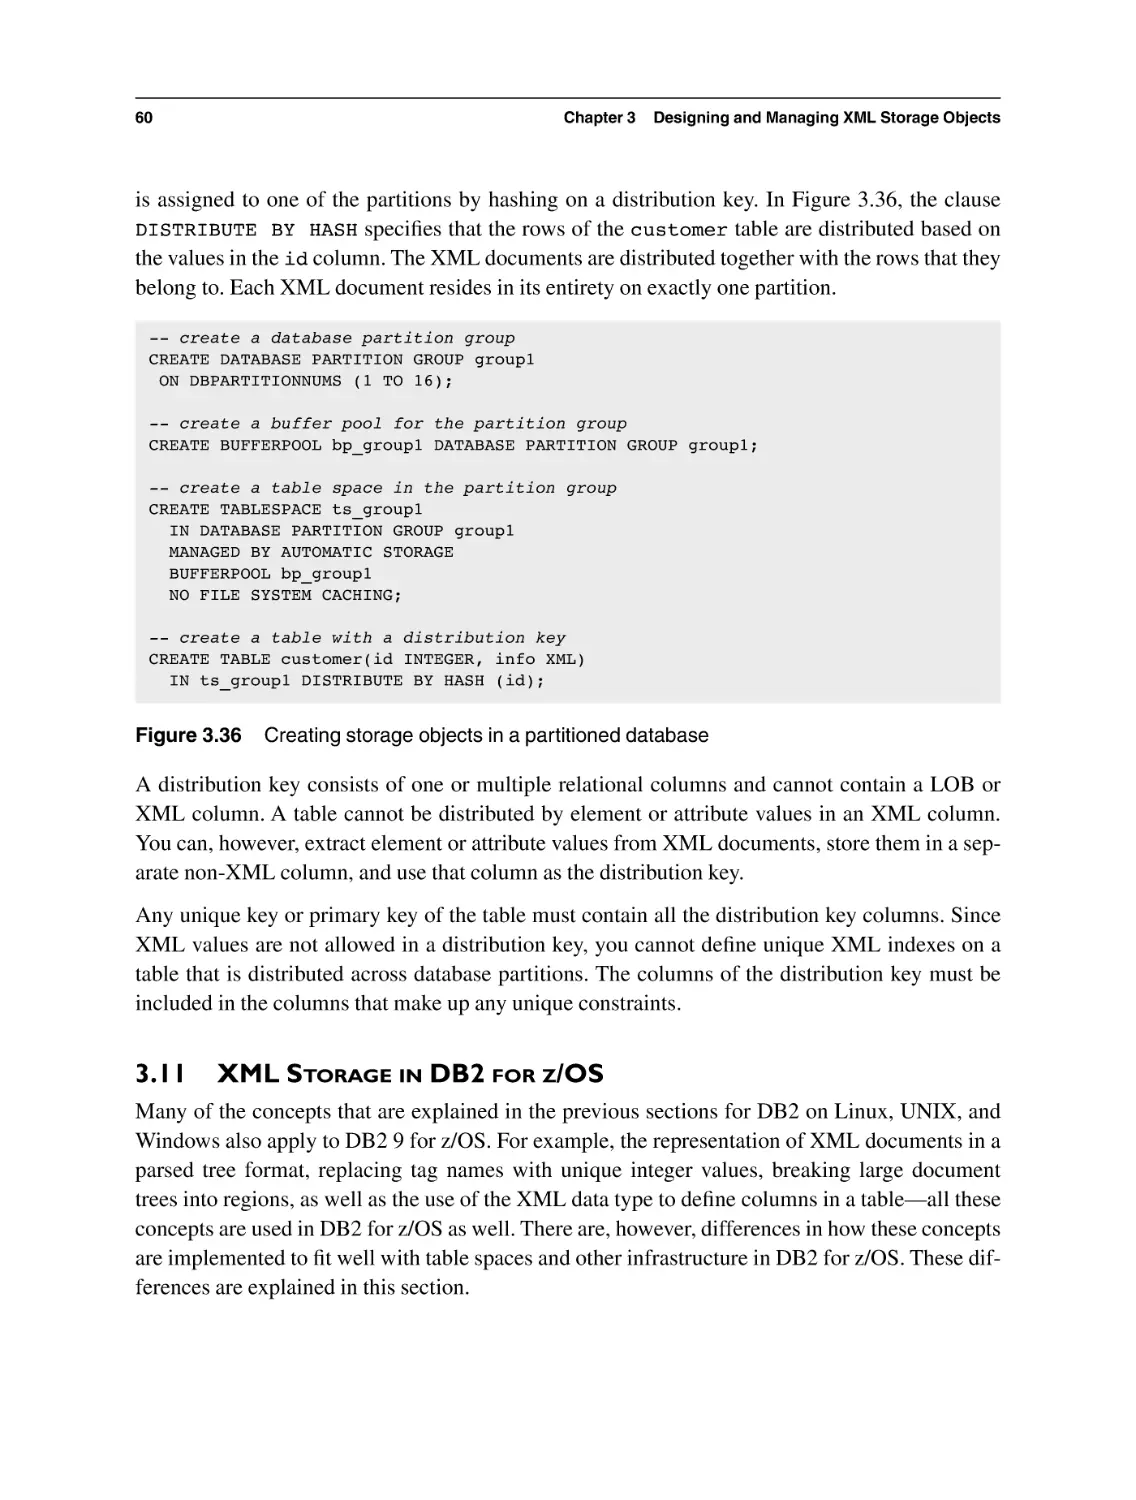 3.11 XML Storage in DB2 for z/OS